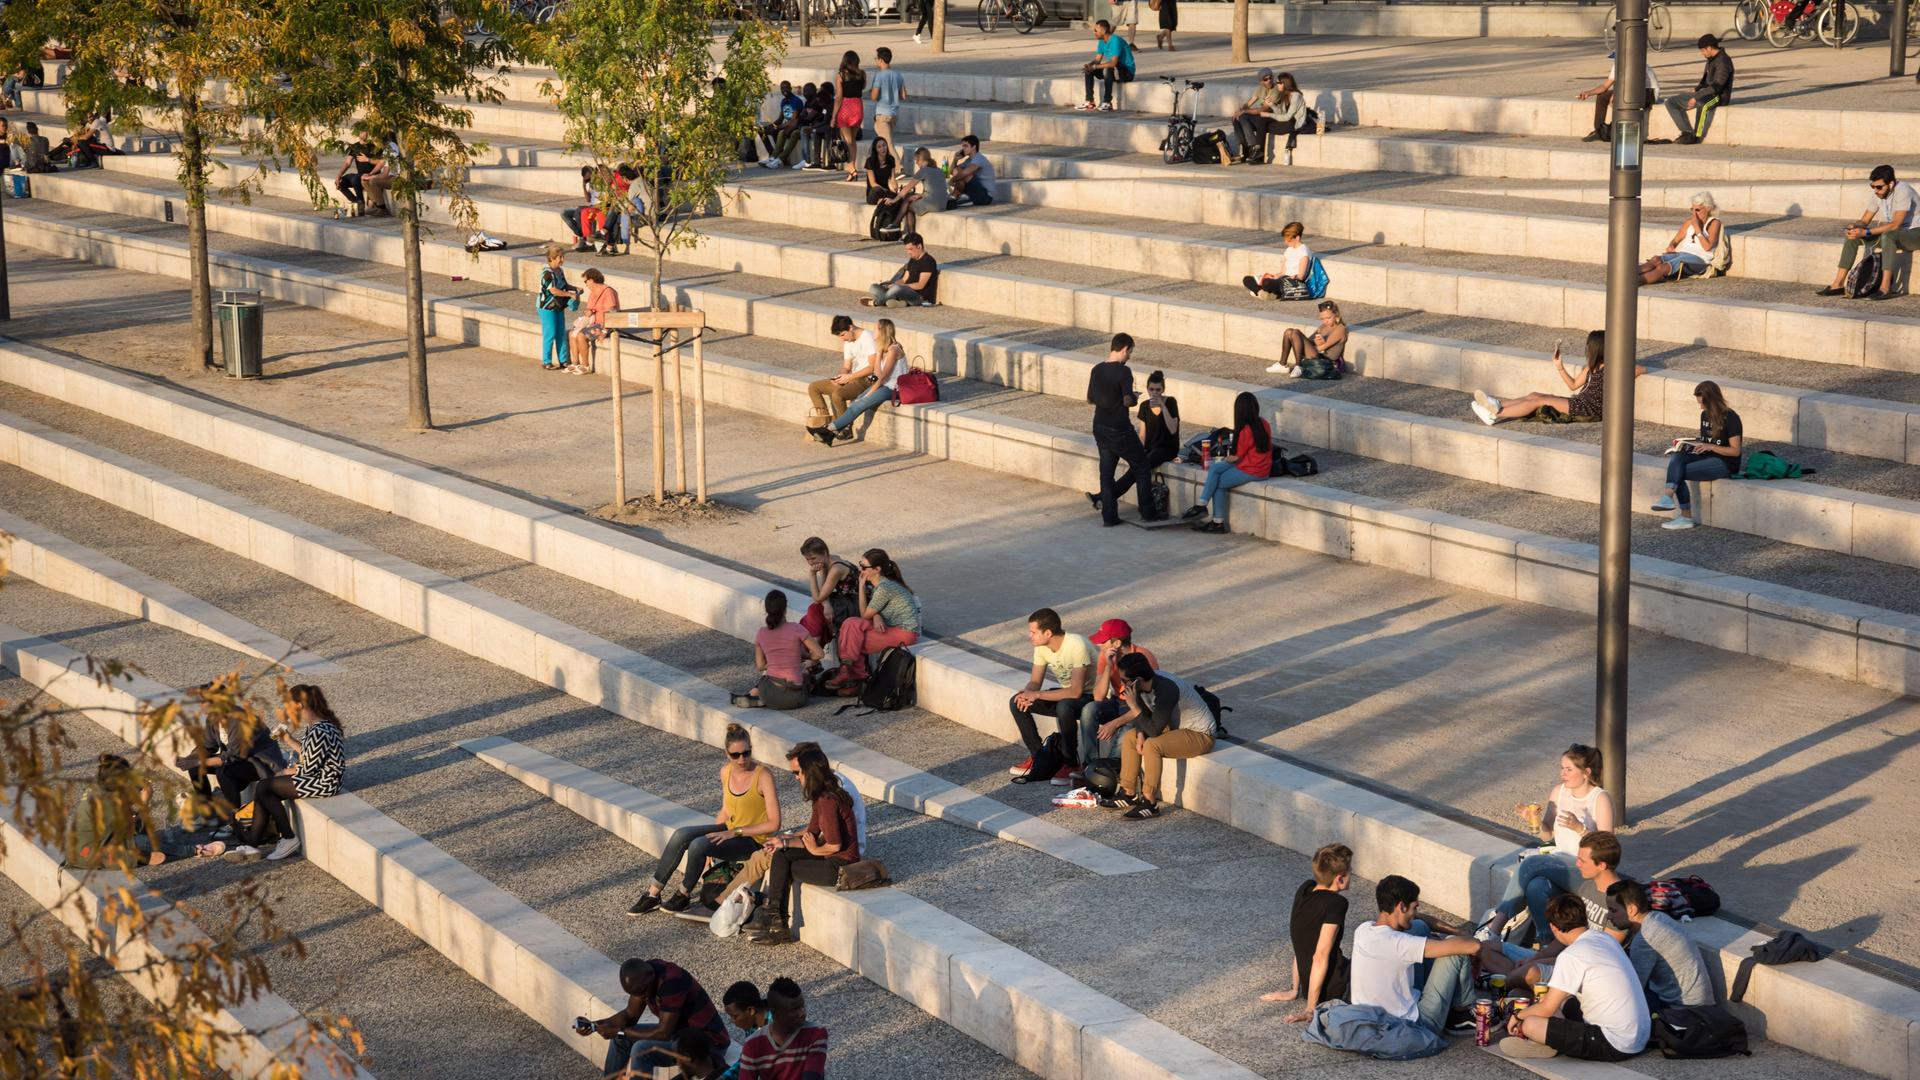 Gruppen von Jugendlichen sitzen auf einer großen Streintreppe mit breiten Stufen und unterhalten sich.